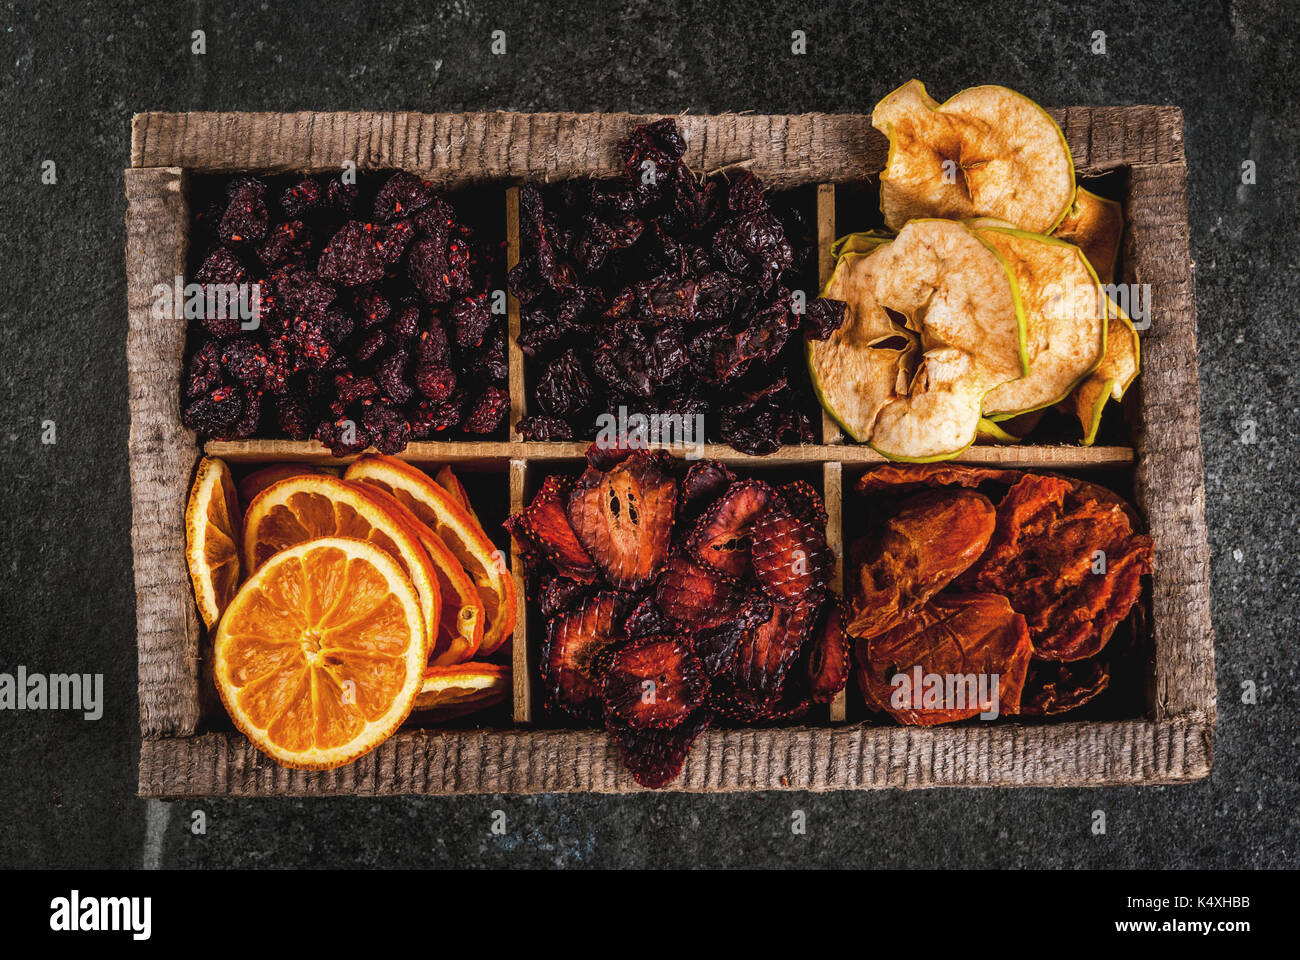 Des baies séchées et les fruits, la récolte pour l'hiver : abricots, pommes, fraises, framboises, cerises, oranges. dans la vieille boîte en bois, sur noir Banque D'Images